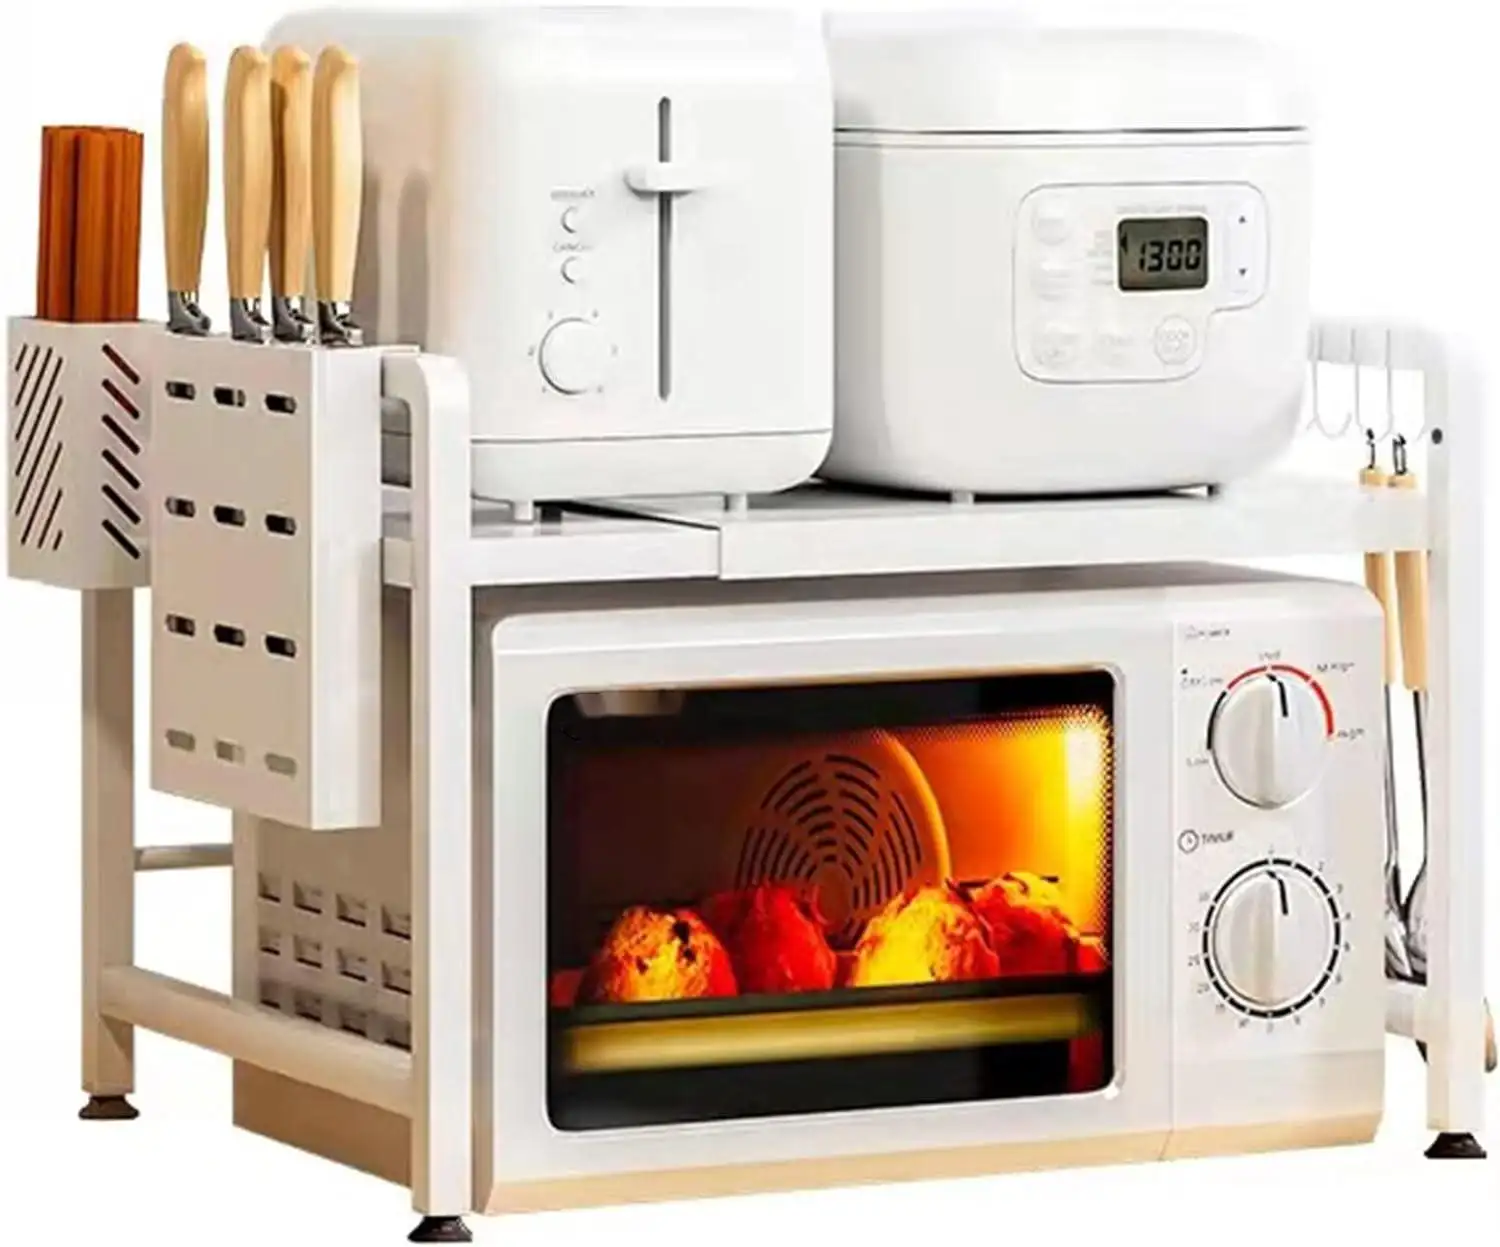 Estante de almacenamiento de cocina ajustable con marco de metal, estante de cocina para panadero con 3 ganchos, soporte para horno microondas, estante de almacenamiento de cocina